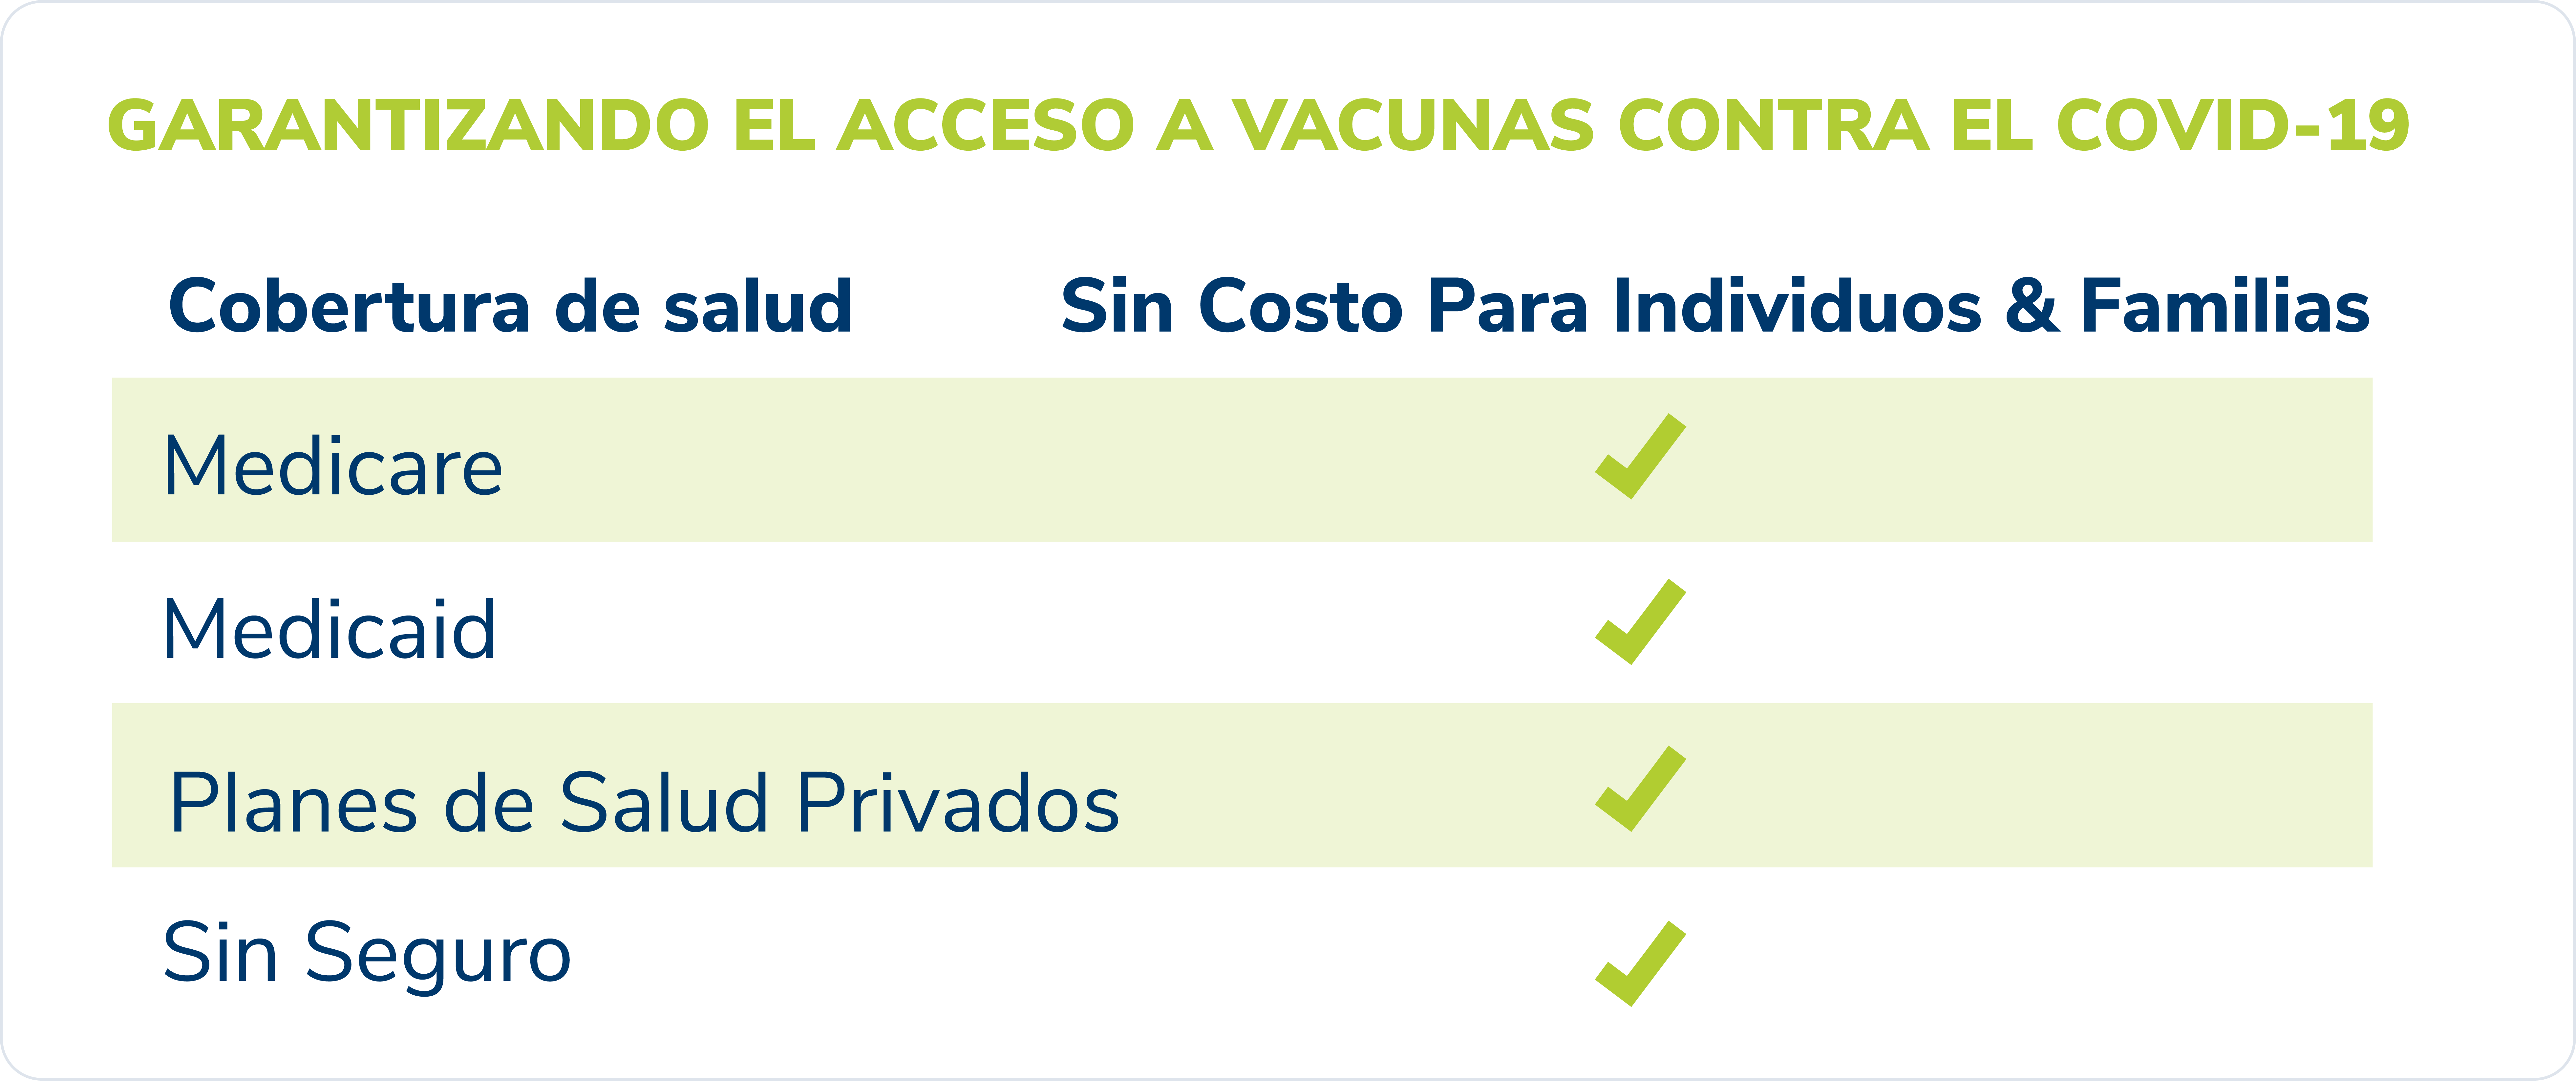 Image Garantizando el accesso a vacunas contra el Covid-19